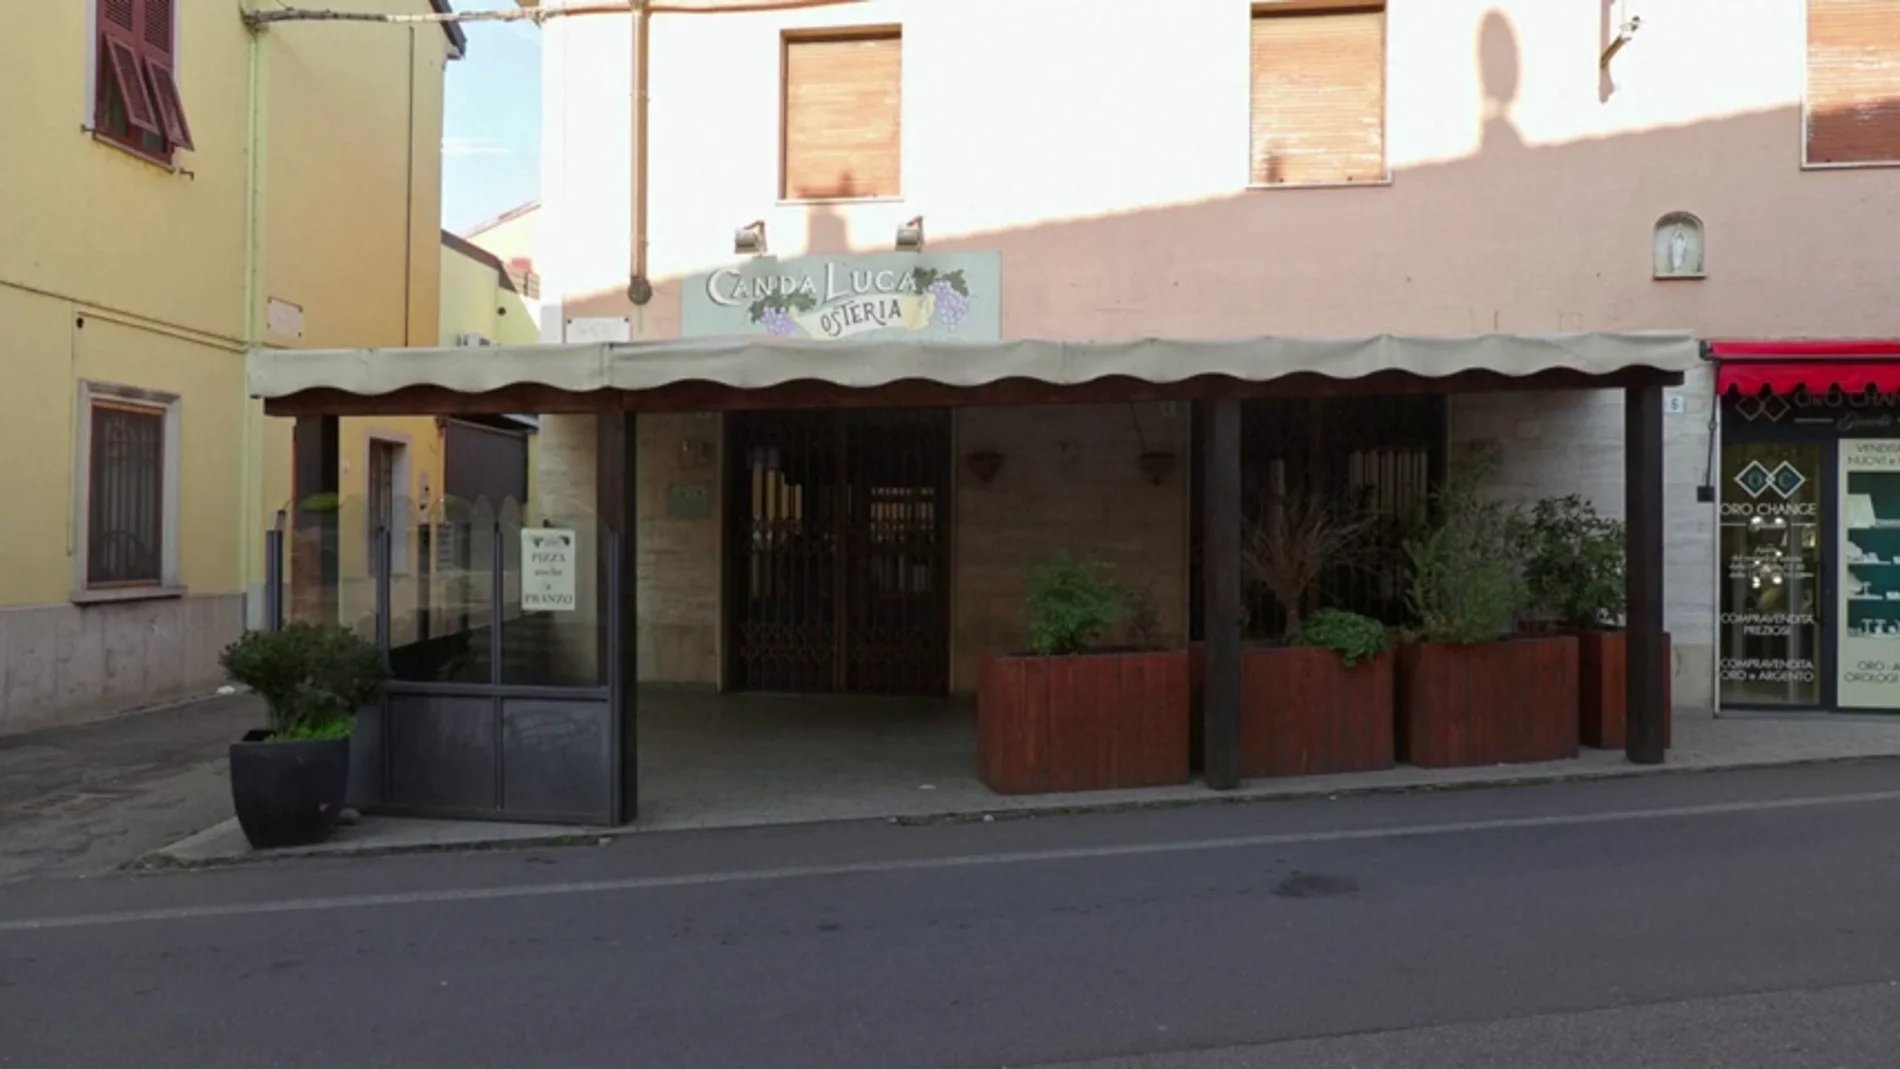 El restaurante que pudo ser el lugar donde se inició la propagación del coronavirus en Italia